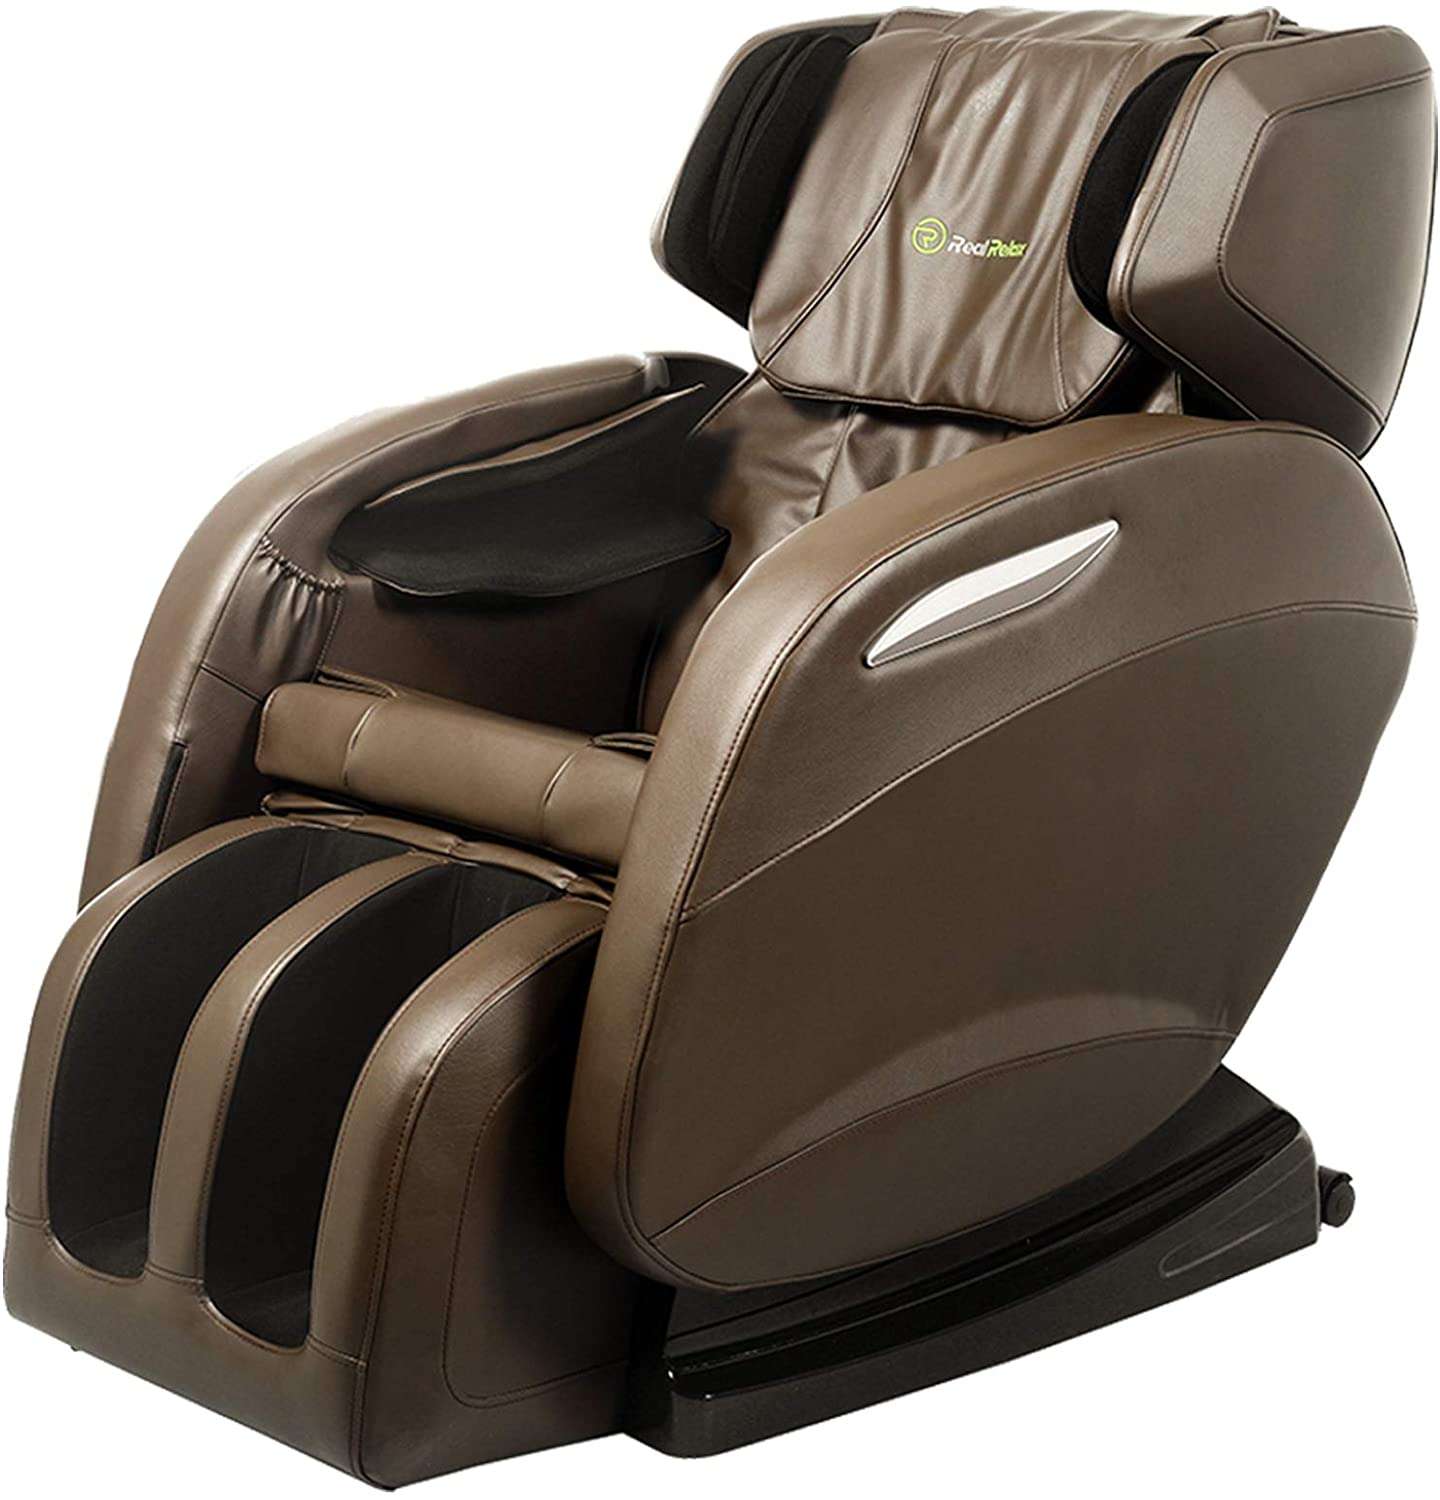 Buy Real Relax Massage Chair, Zero Gravit Full Body ...